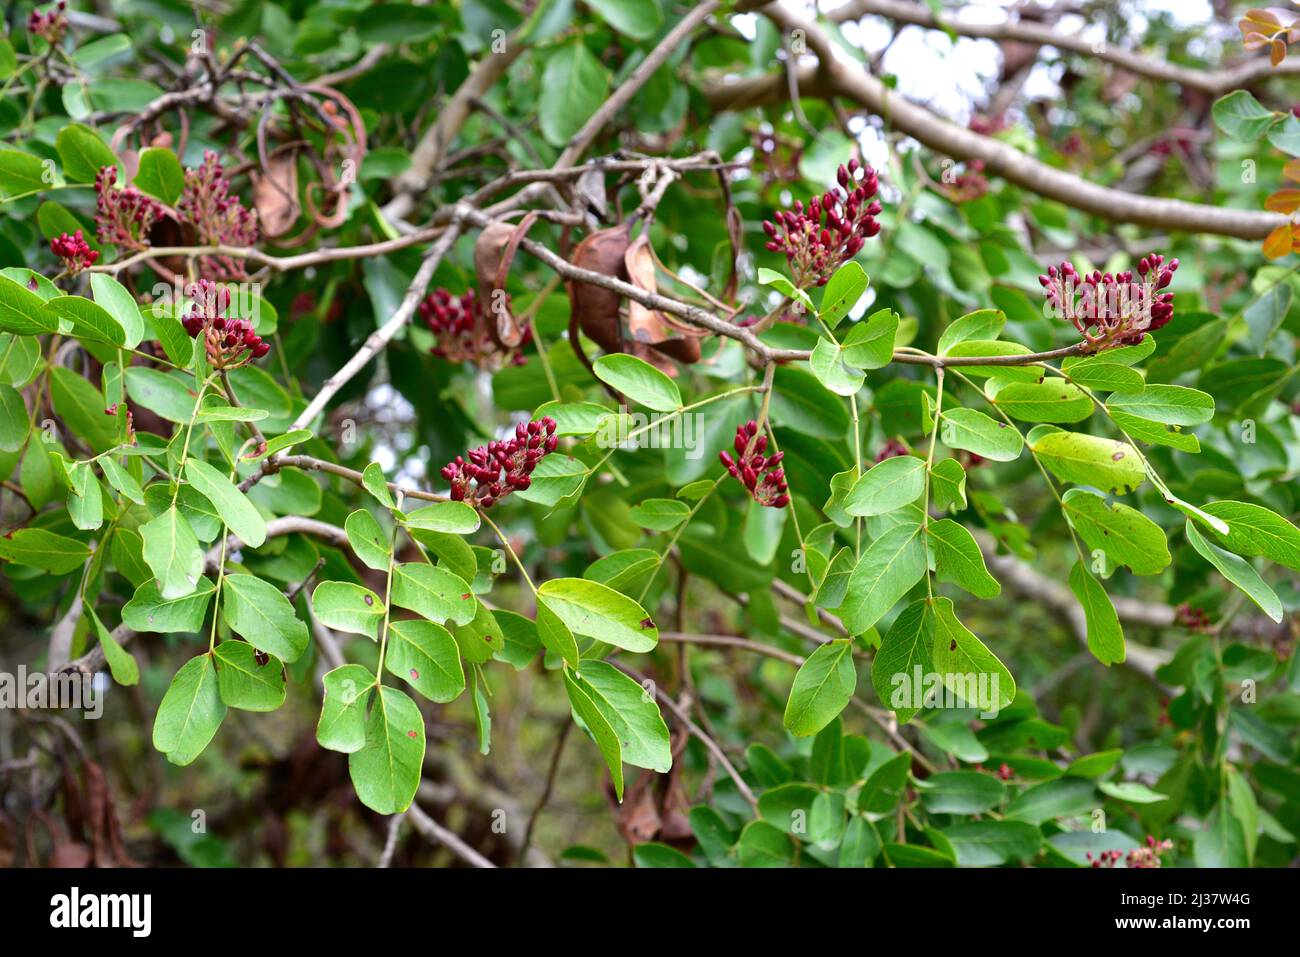 El frijol jaballo (Schotia brachypetala o Schotia latifolia) es un árbol caducifolio nativo del sur de África. Brotes de flores y hojas. Foto de stock